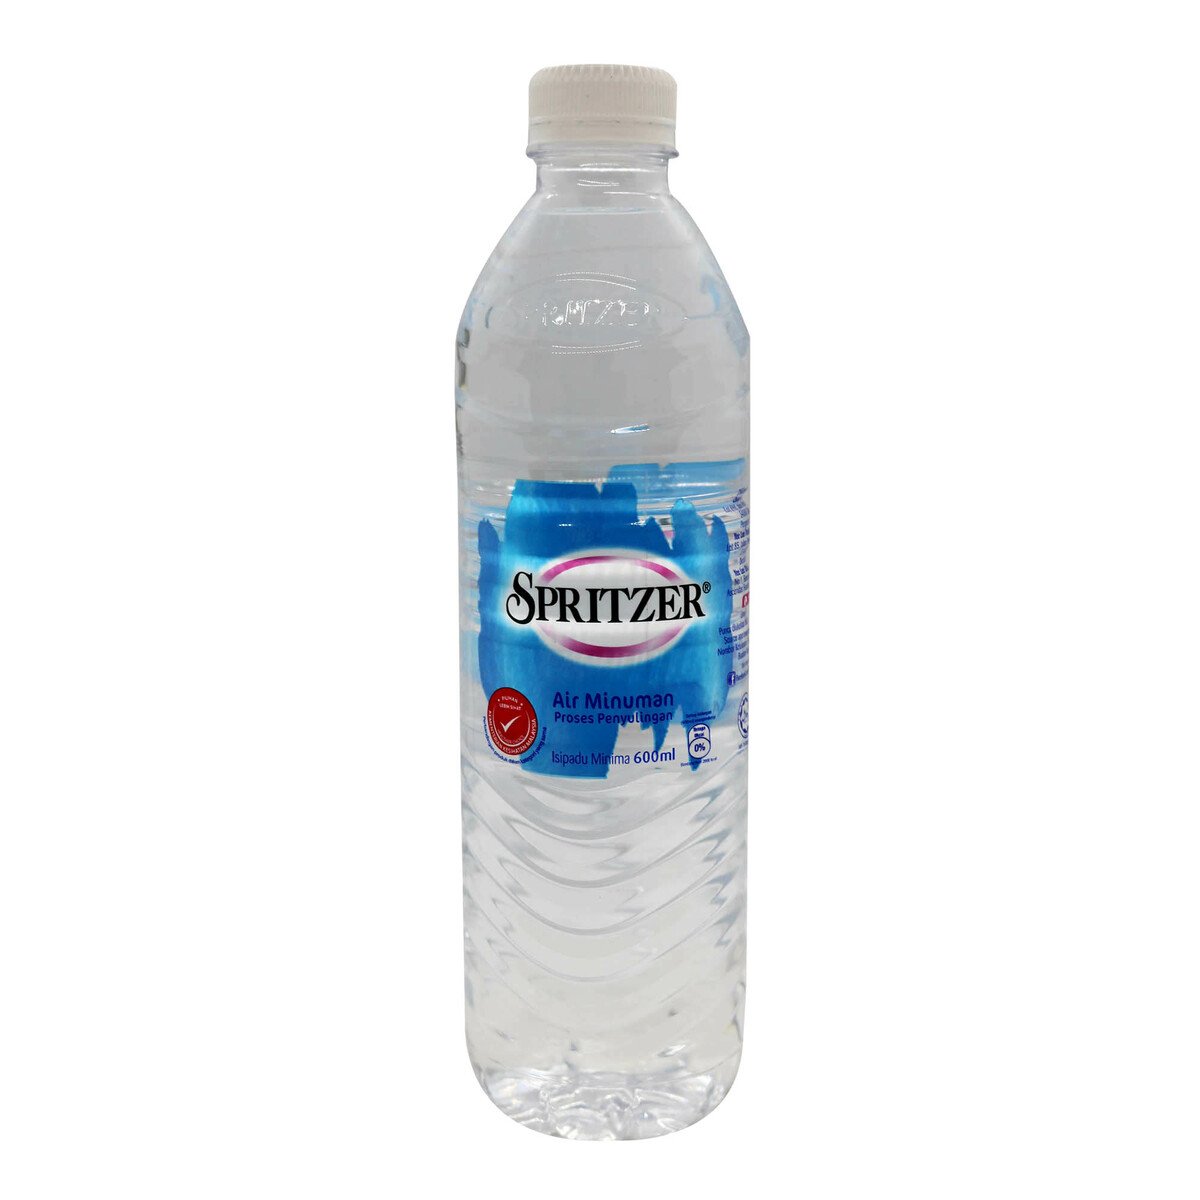 Spritzer Distilled Drinking Water 600ml